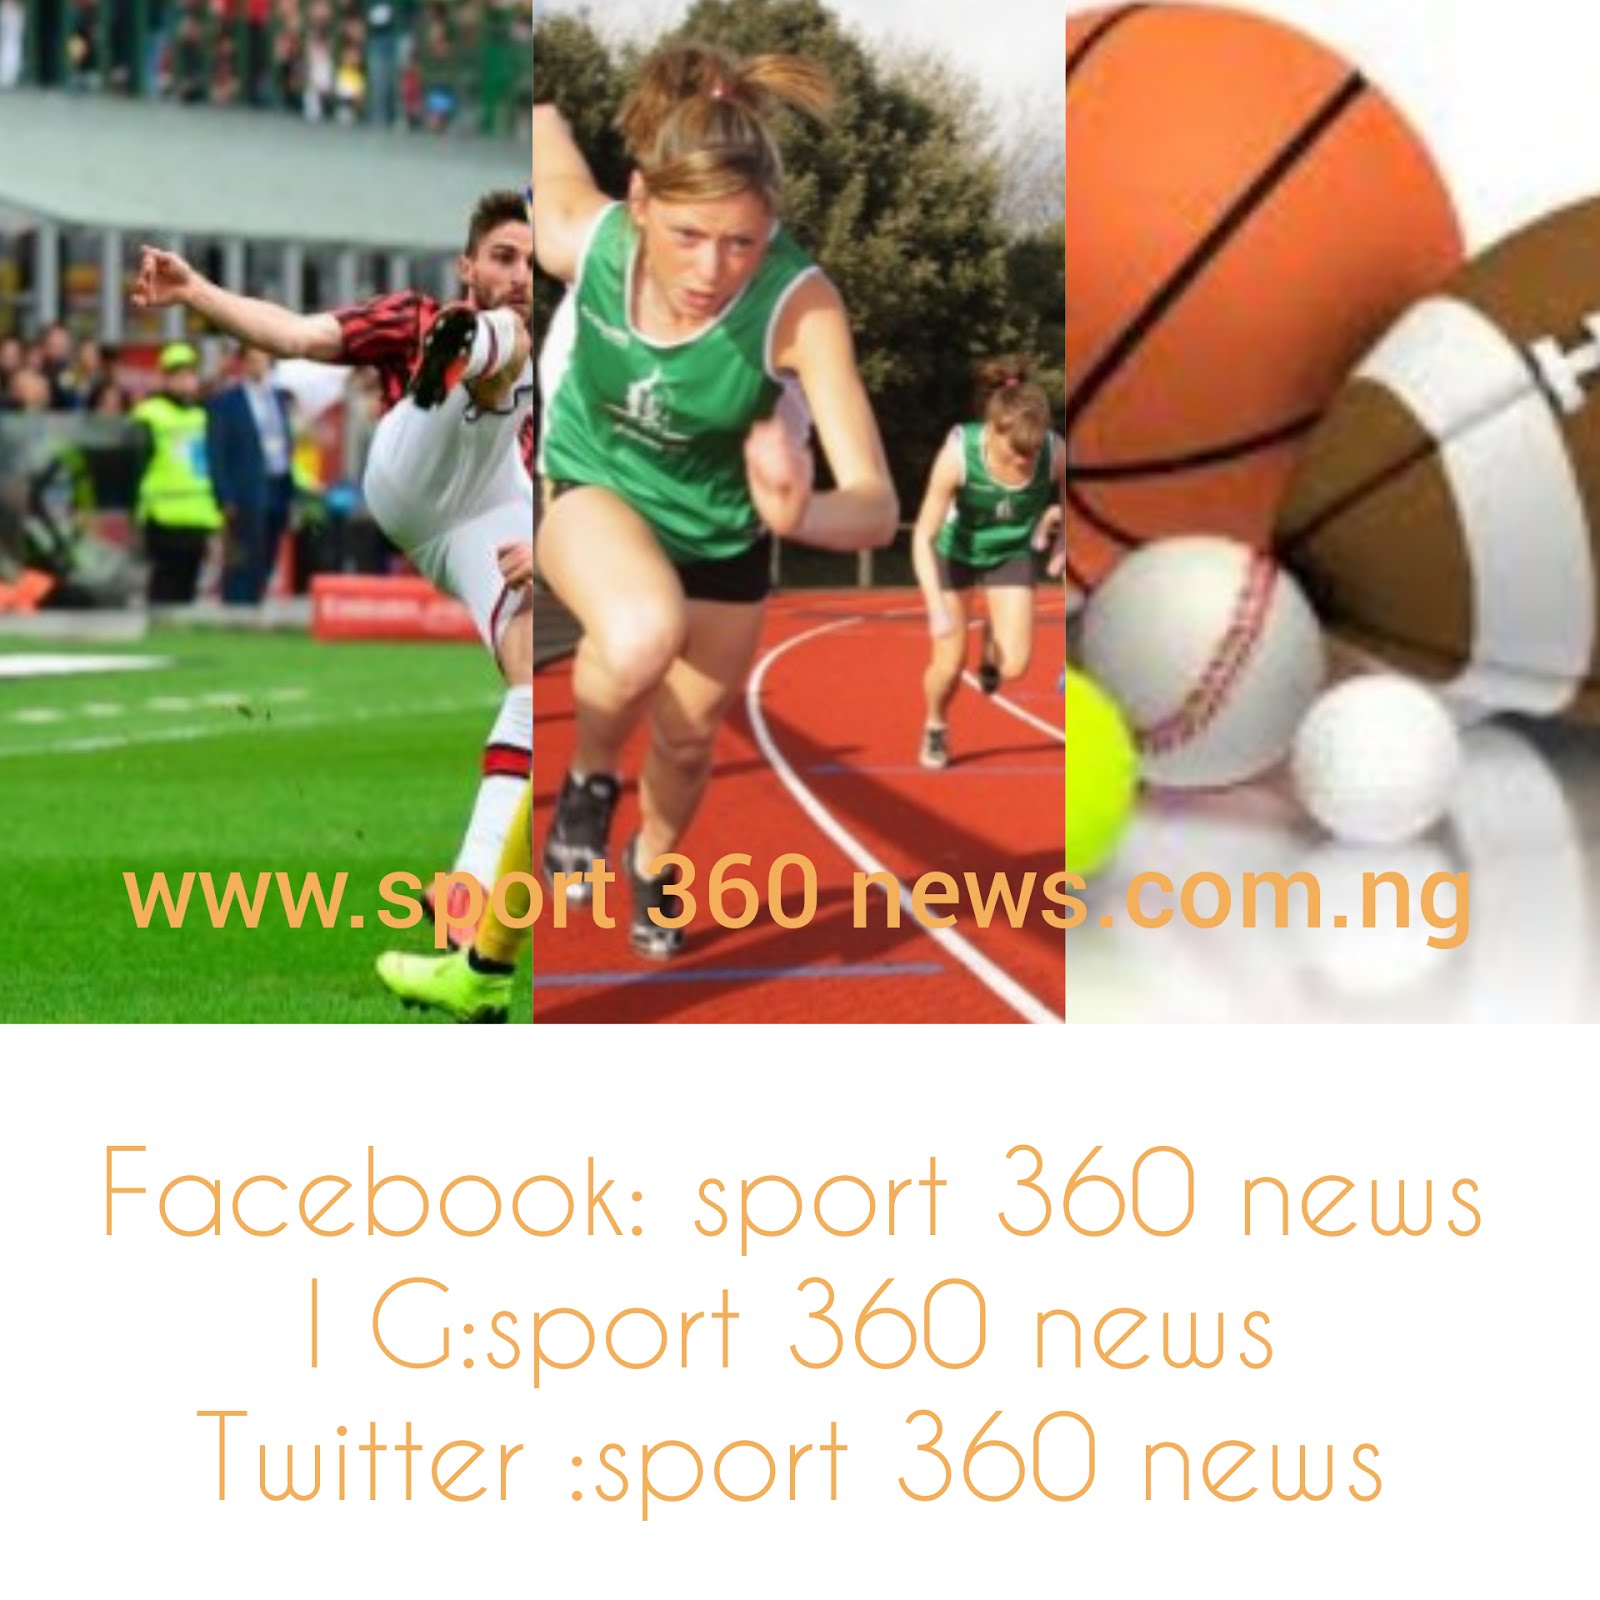 Sport 360 news